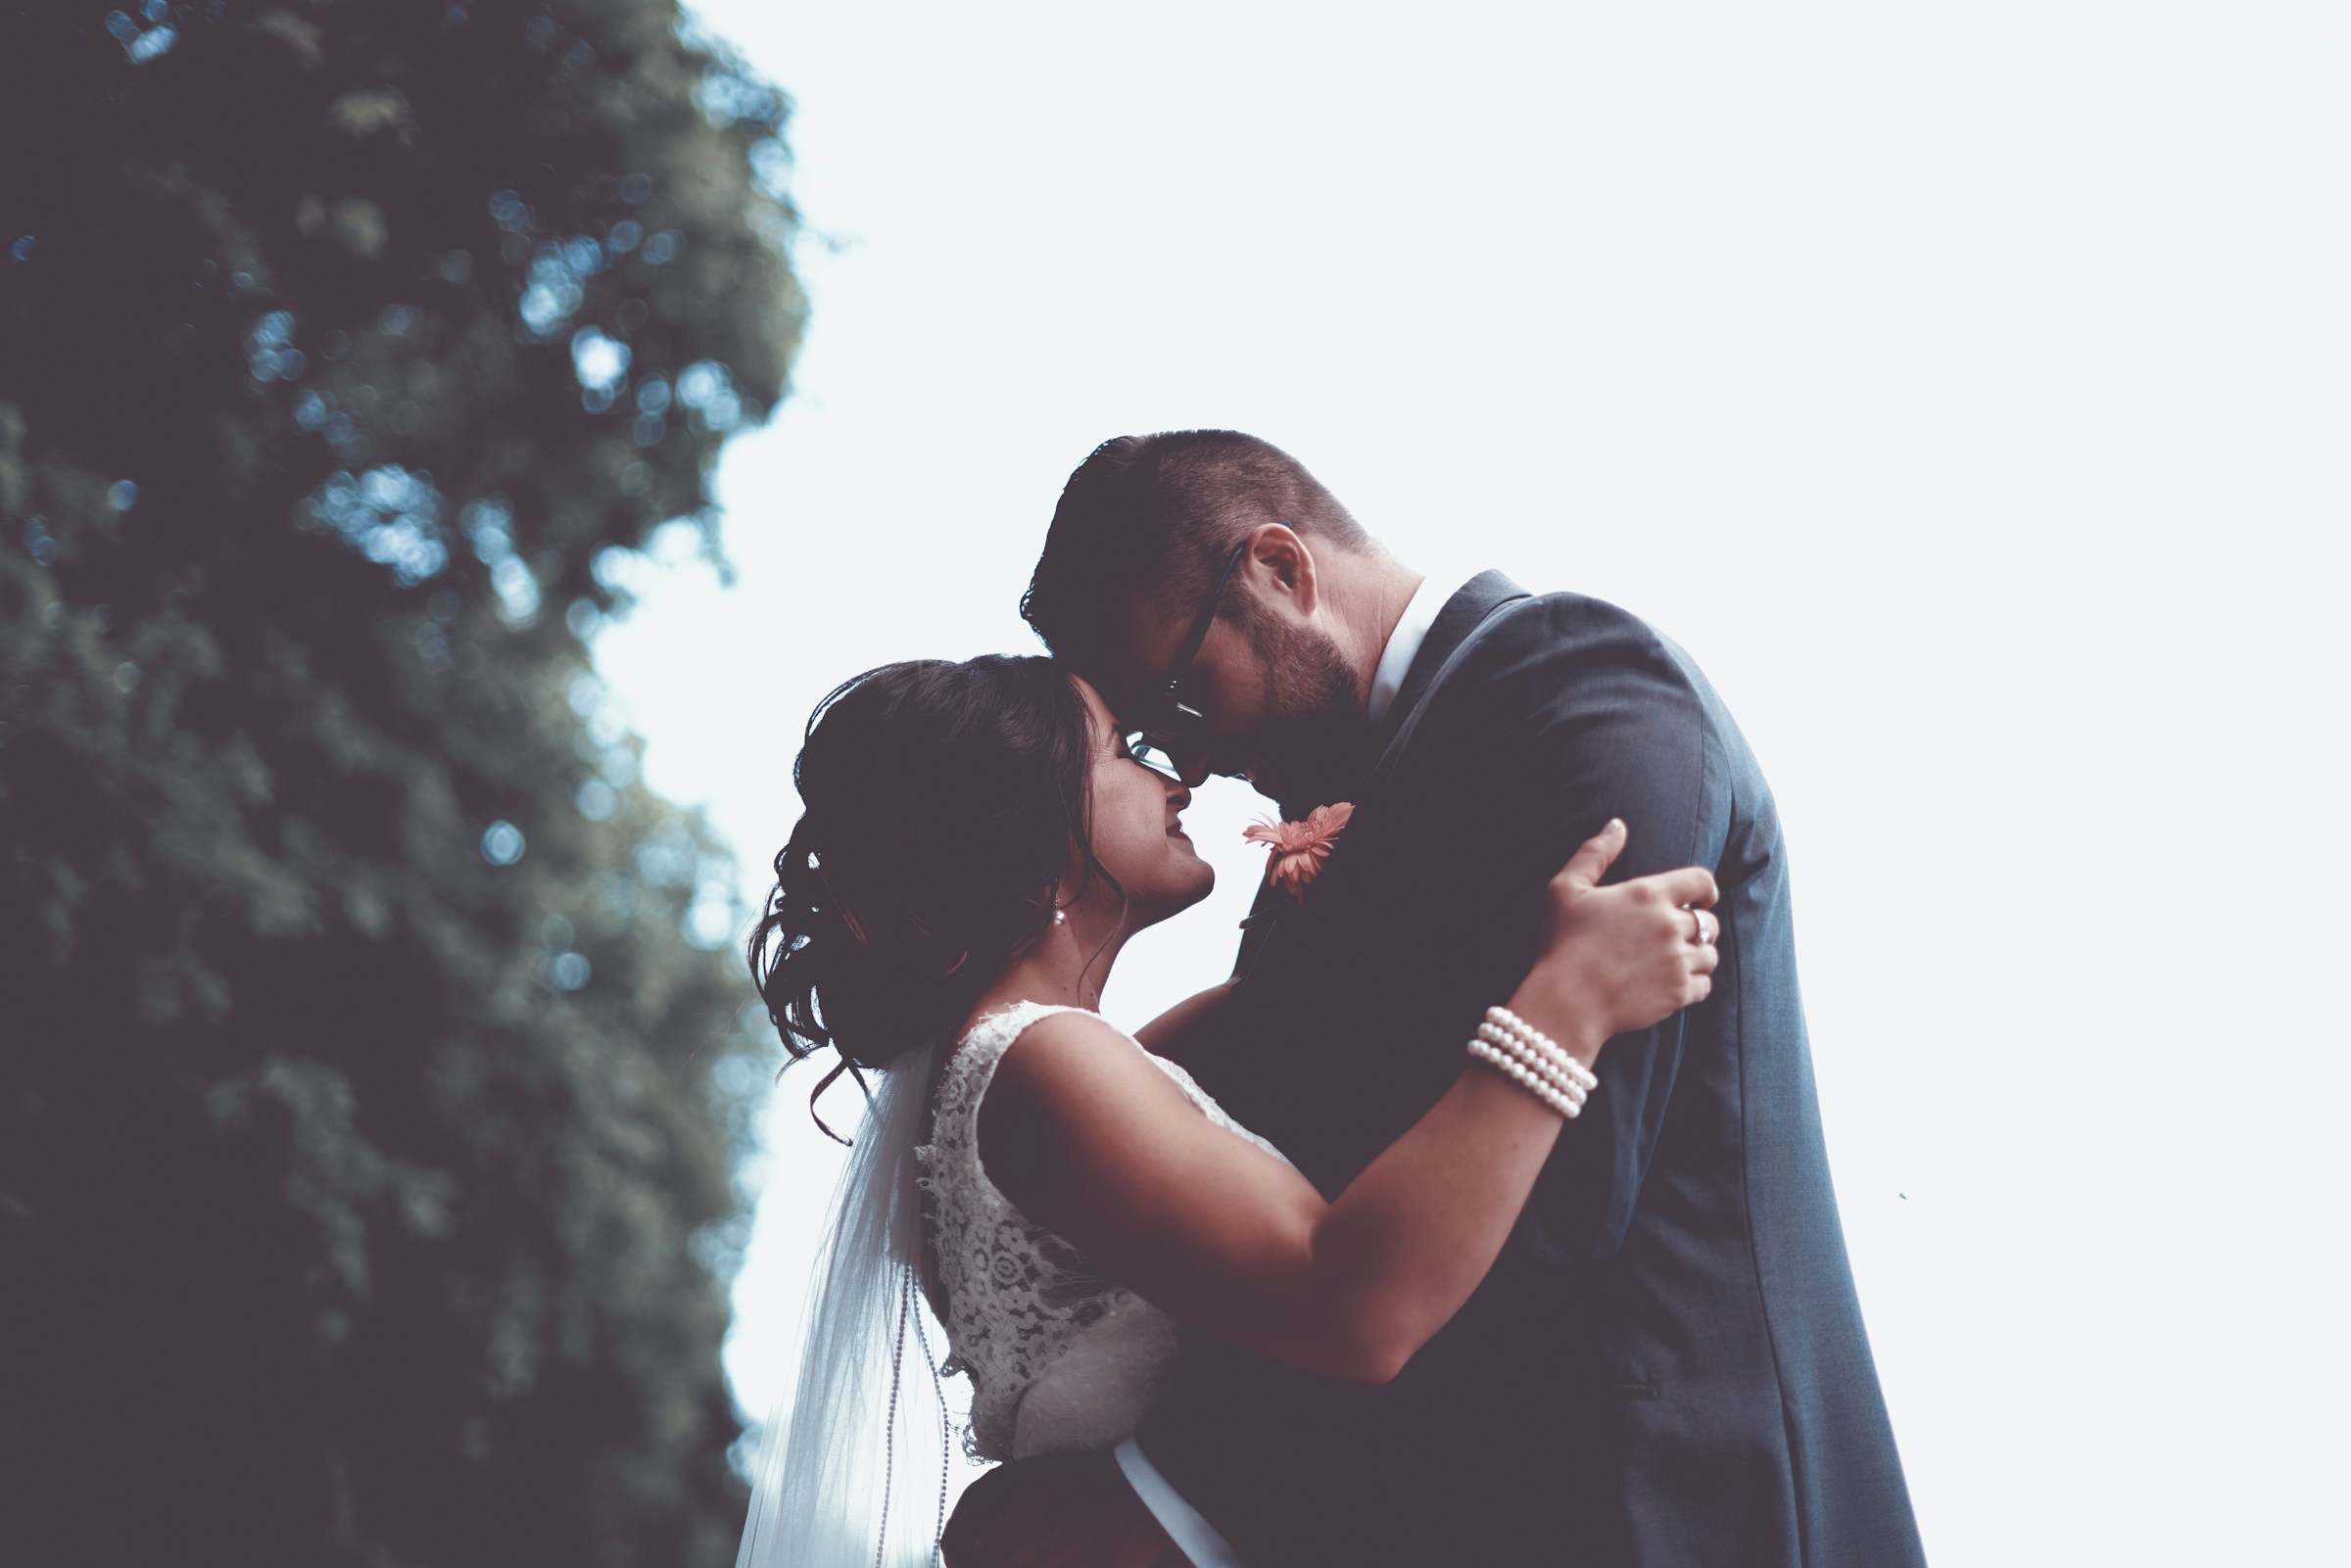 Eine Umarmung zwischen Braut und Bräutigam | Quelle: Unsplash